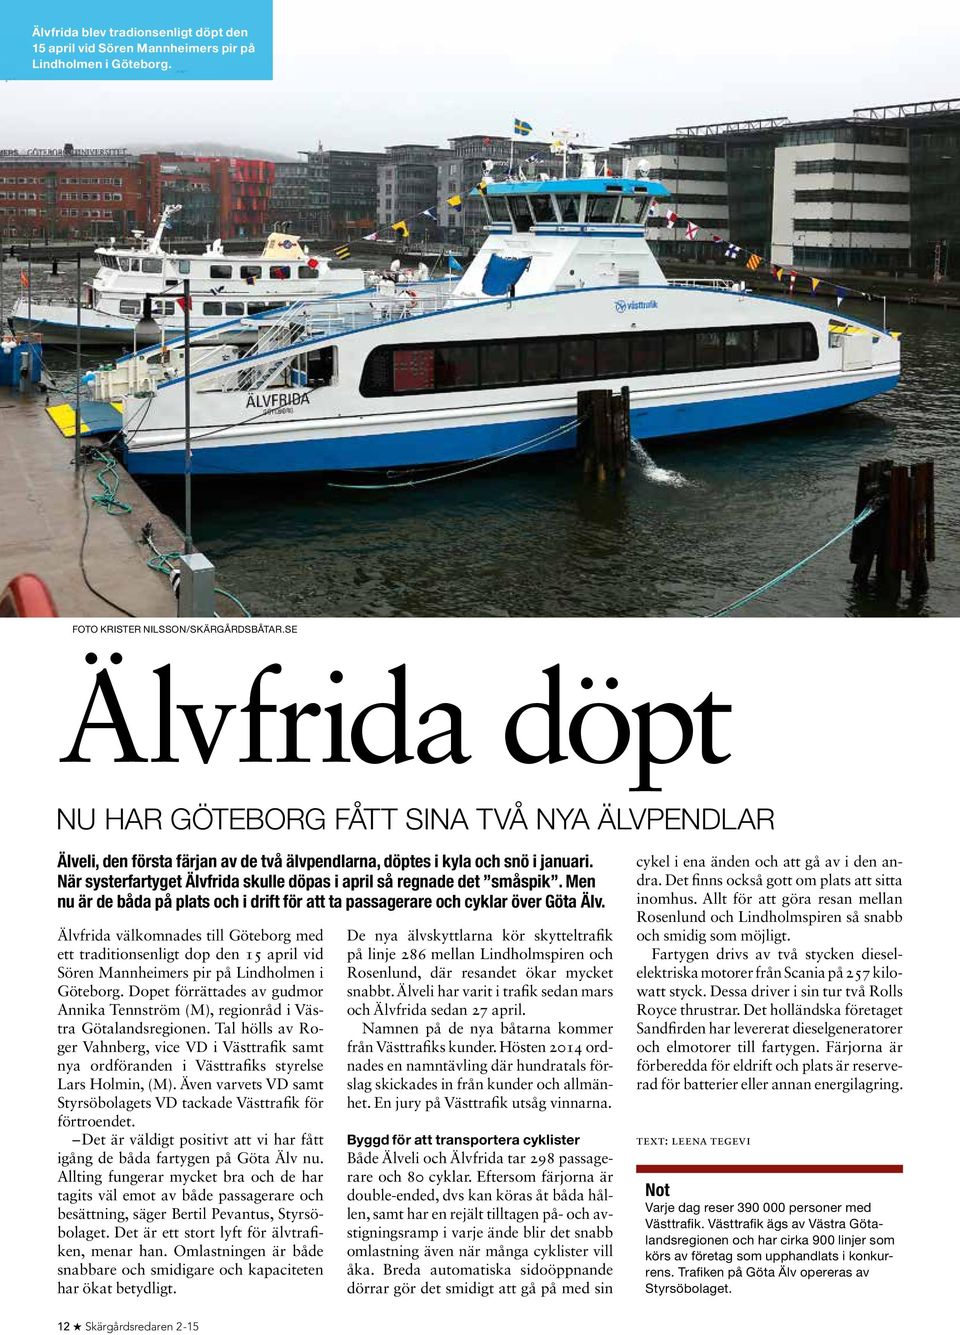 När systerfartyget Älvfrida skulle döpas i april så regnade det småspik. Men nu är de båda på plats och i drift för att ta passagerare och cyklar över Göta Älv.